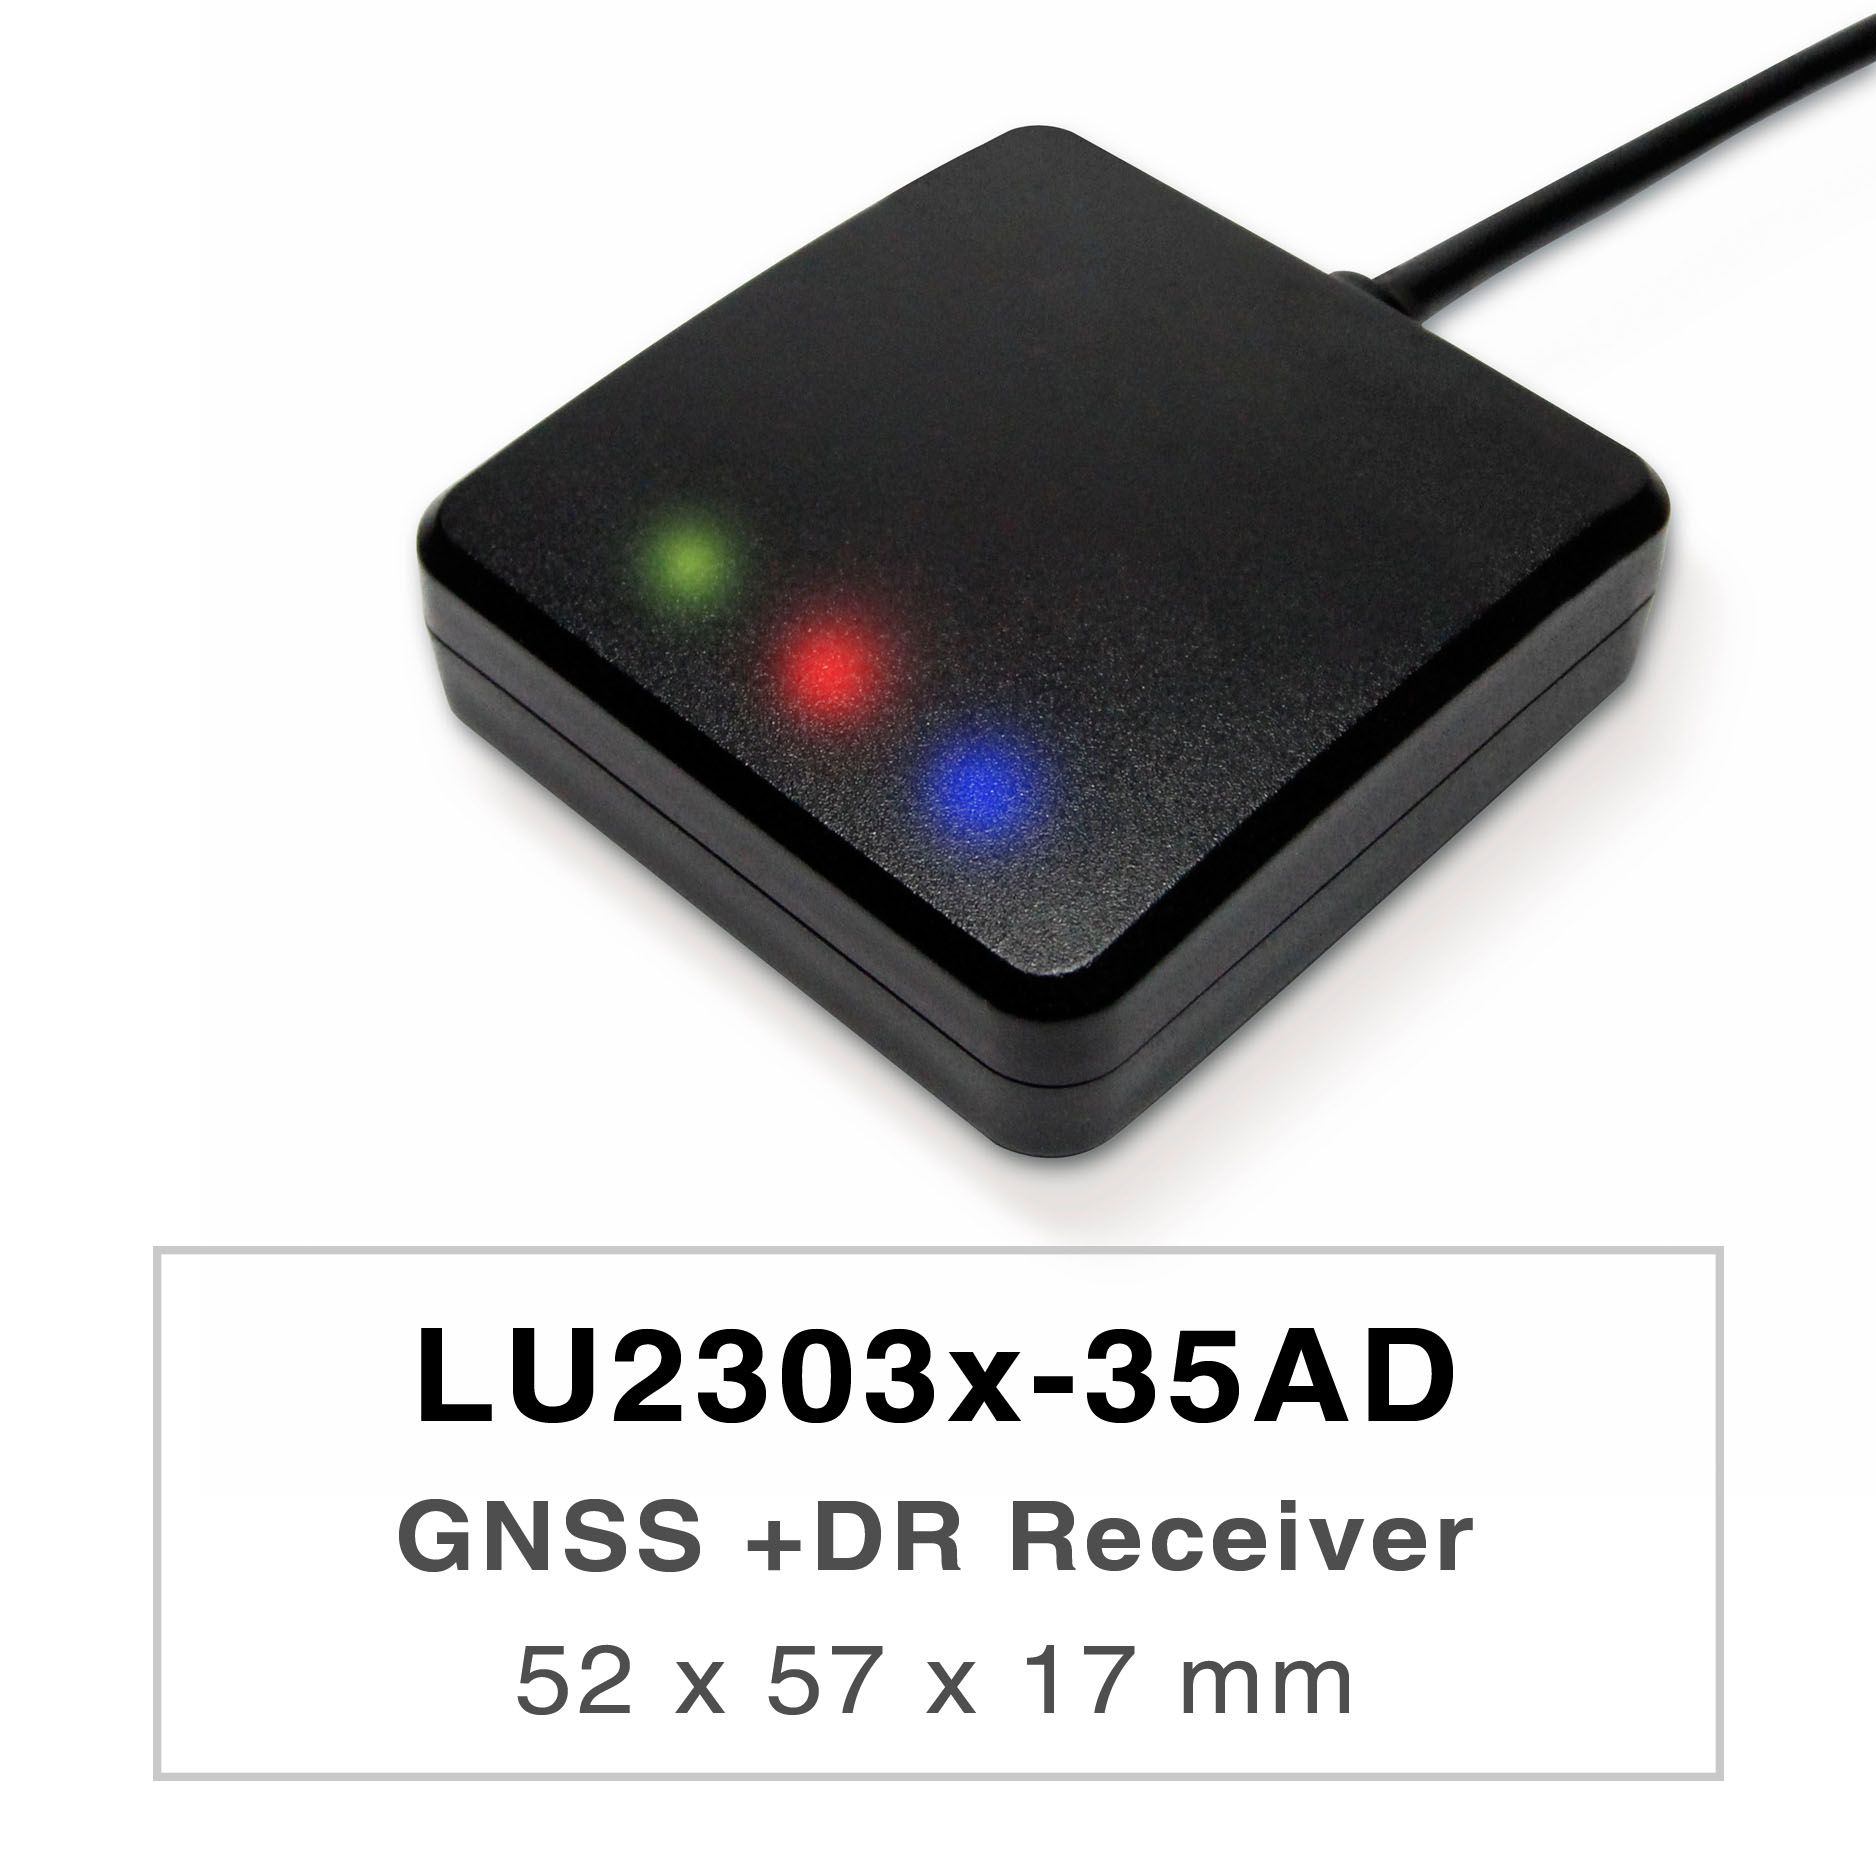 Los productos de la serie LU2303x-35AD son receptores GNSS UDR (Untethered Dead Reckoning) de doble banda de alto rendimiento (también conocidos como mouse GNSS) que son capaces de rastrear todos los sistemas de navegación civil global (GPS, GLONASS, BDS, GALILEO, QZSS). El mouse GNSS adquirirá señales L1 y L5 a la vez y proporcionará una mejor precisión de posición.